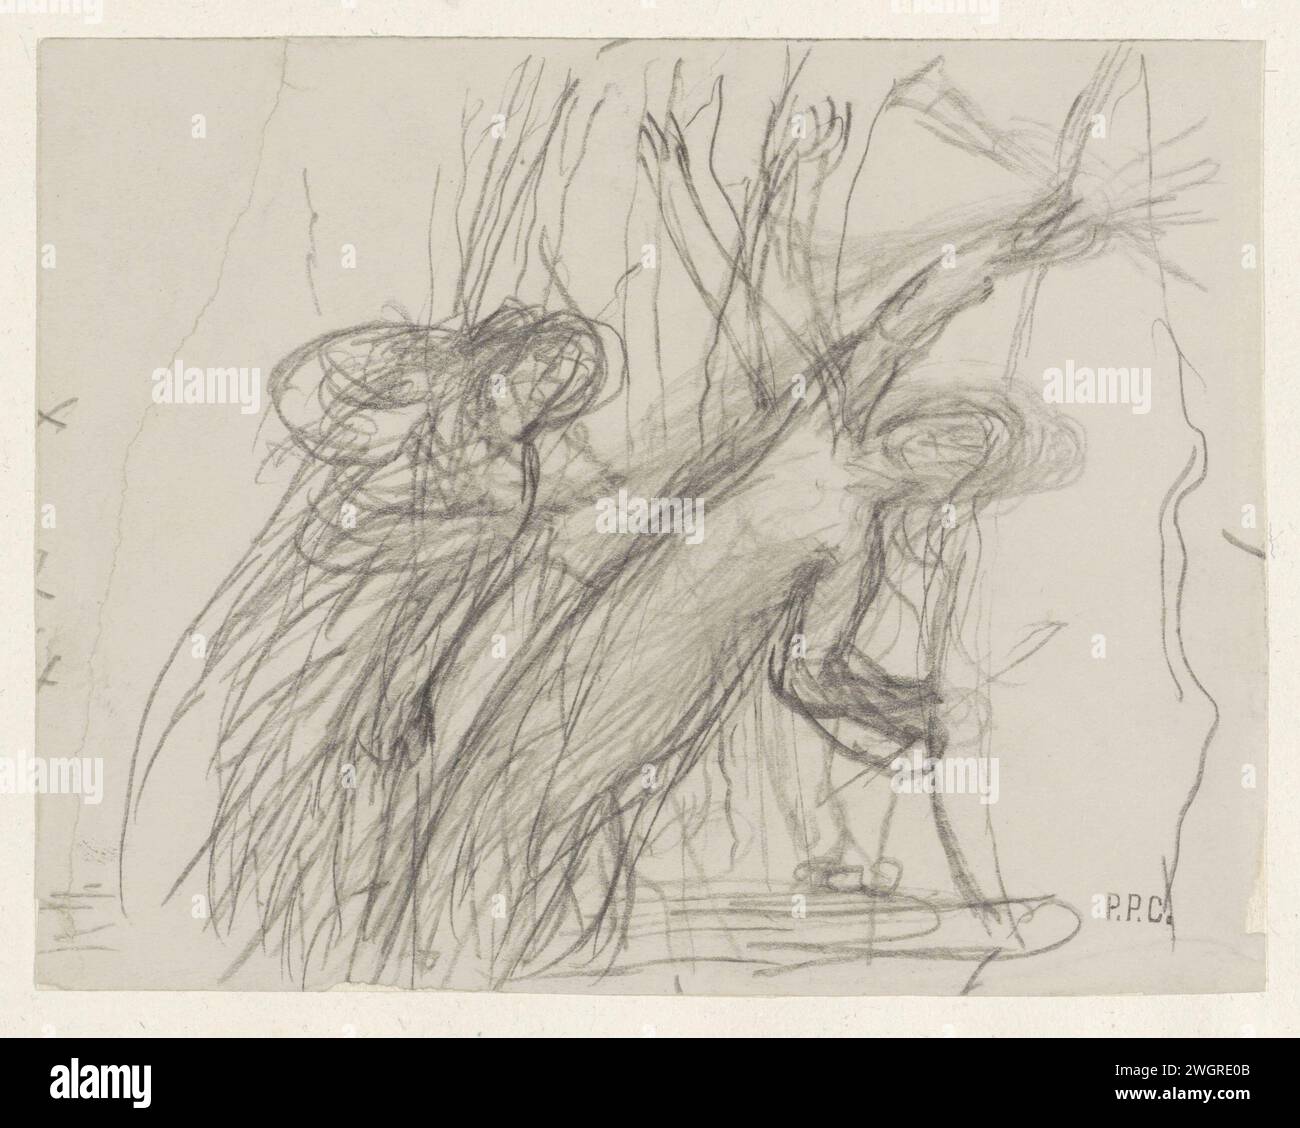 Croquis de deux figures féminines, dont l'une est des raisons à bras levés, Pierre Cécile Puvis de Chavannes, 1834 - 1898 papier à dessin. Chute de craie - AA - figure humaine féminine (+ deux personnes) Banque D'Images